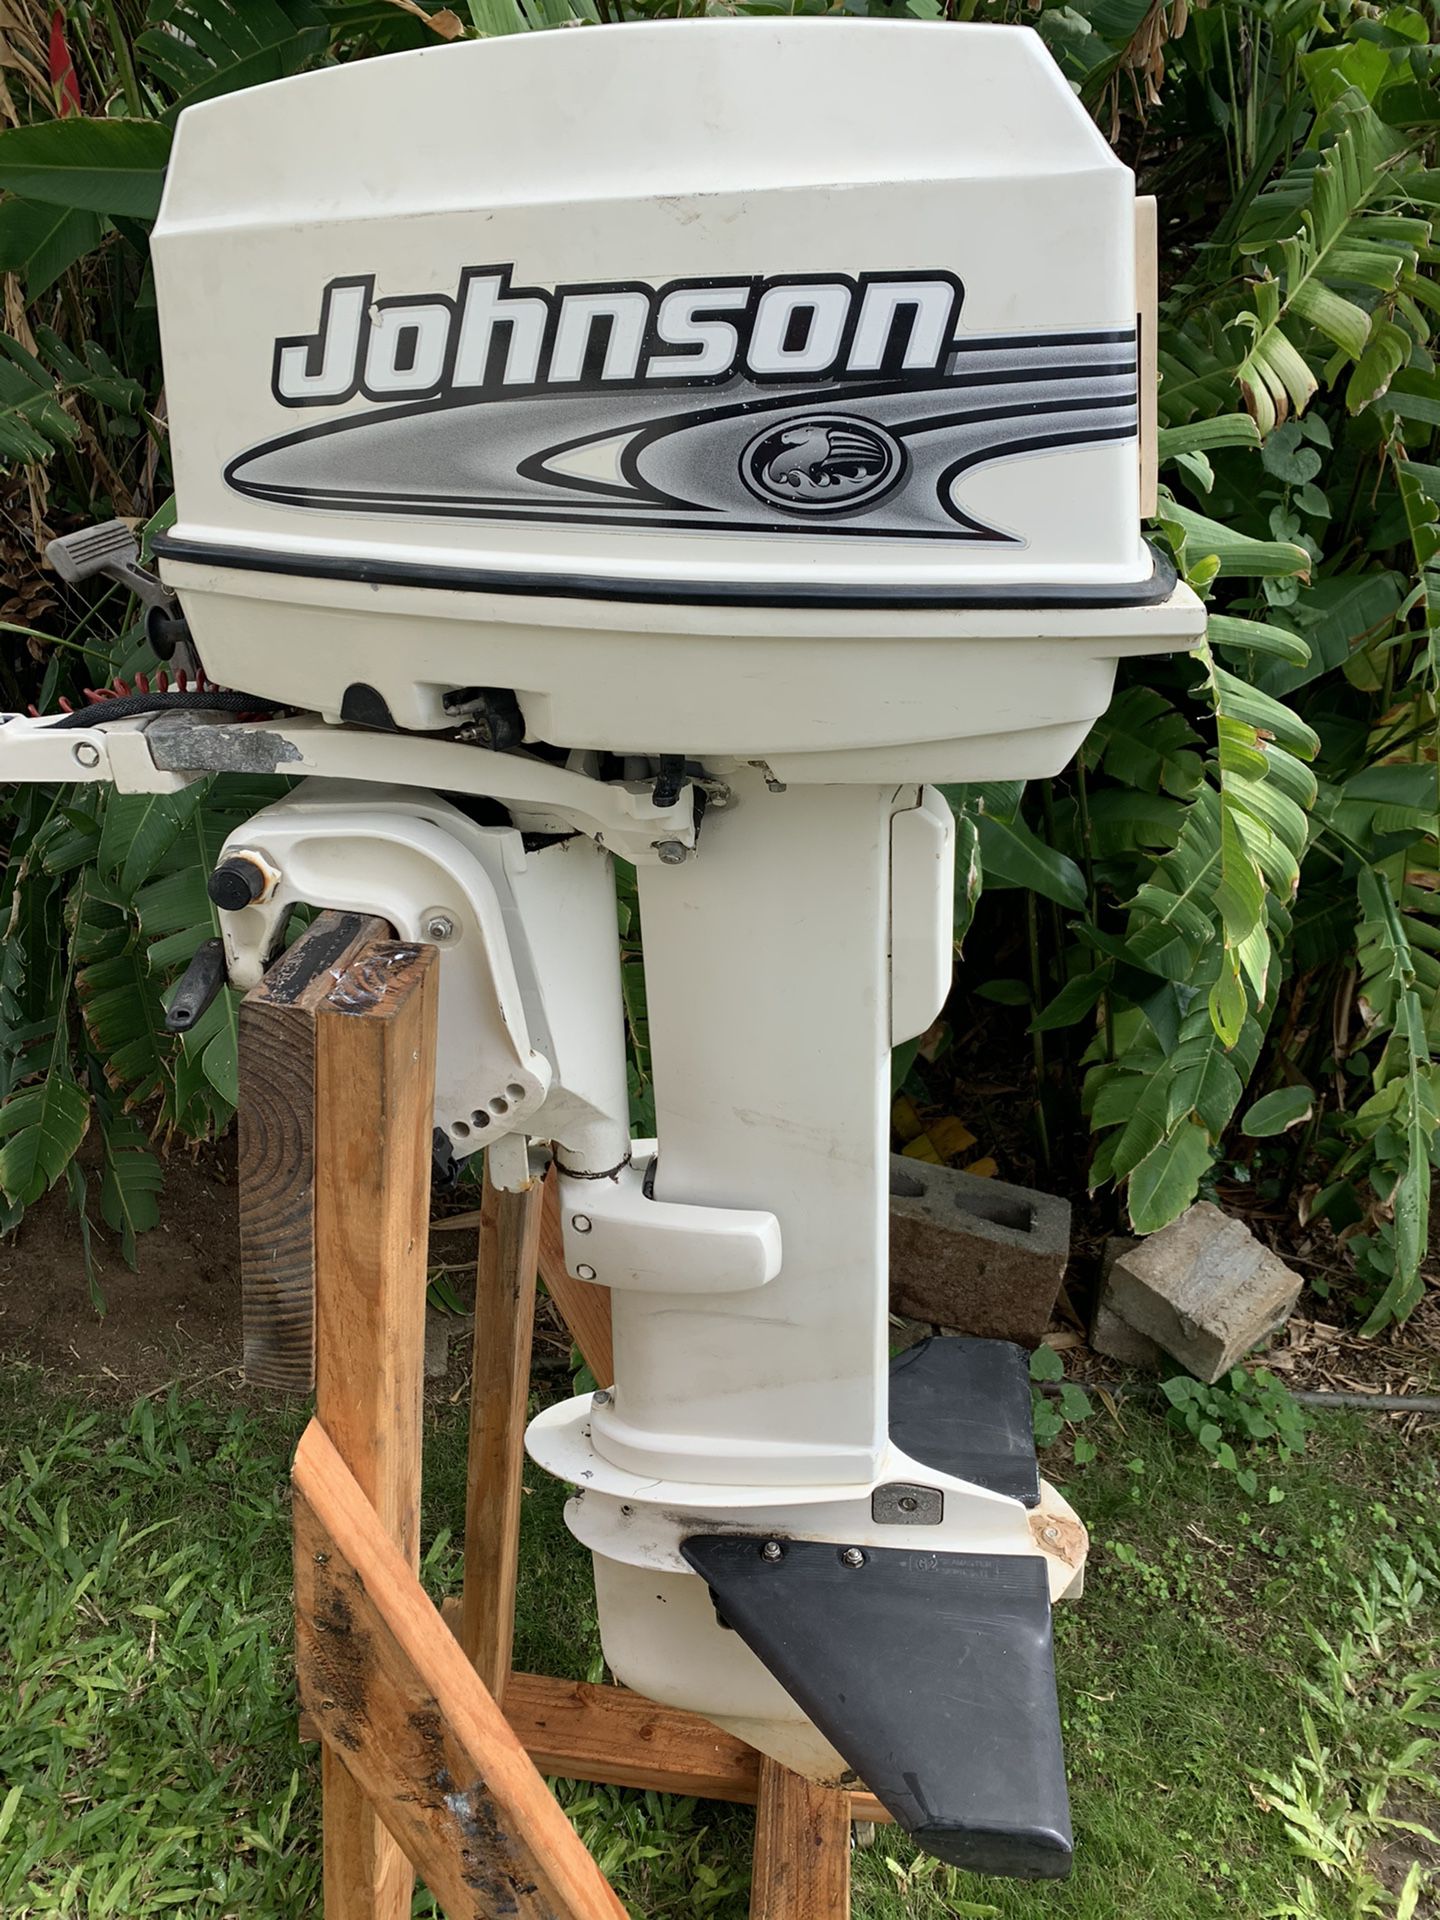 2001 Johnson 25 hp 2 stroke long shaft outboard motor